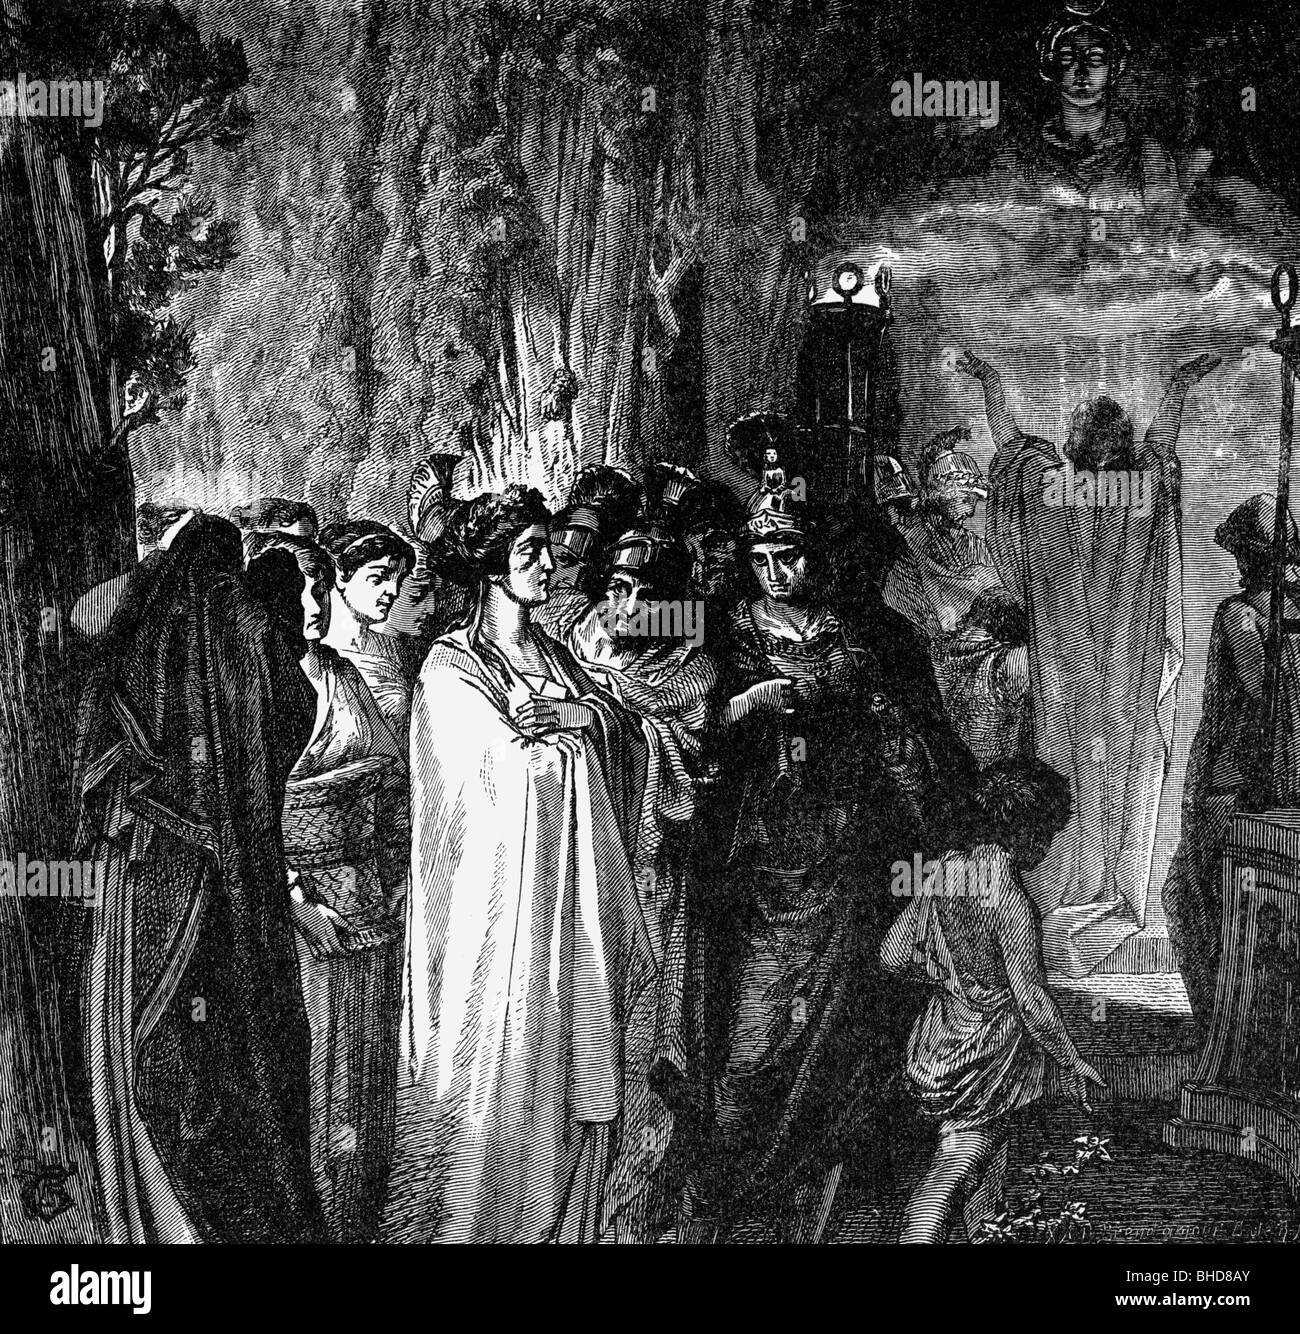 Ifigenia, figura mítica griega, hija de Agamemnon y Clytemnestra, escena, inmolación en aulis, mujer, mujer, mujeres, Foto de stock